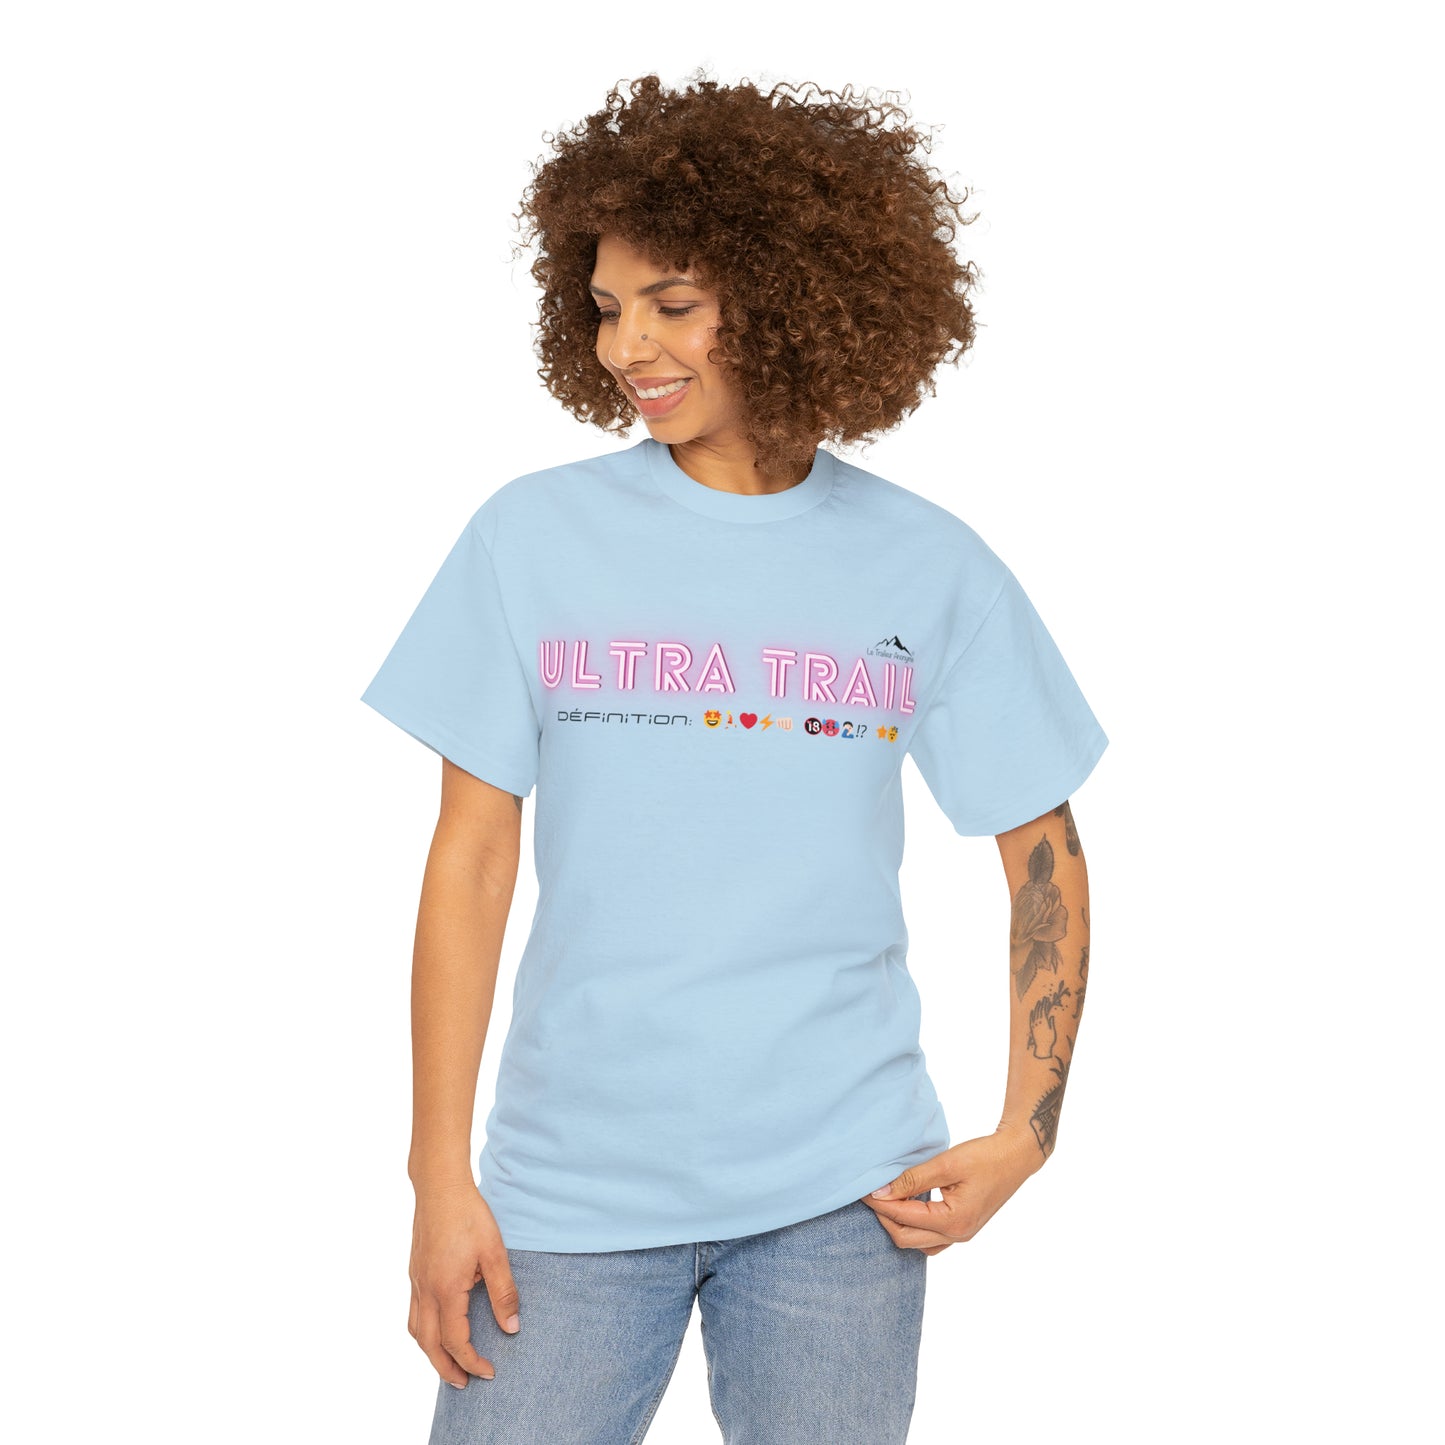 T-Shirt Basic - Femme - Collection "Définition"